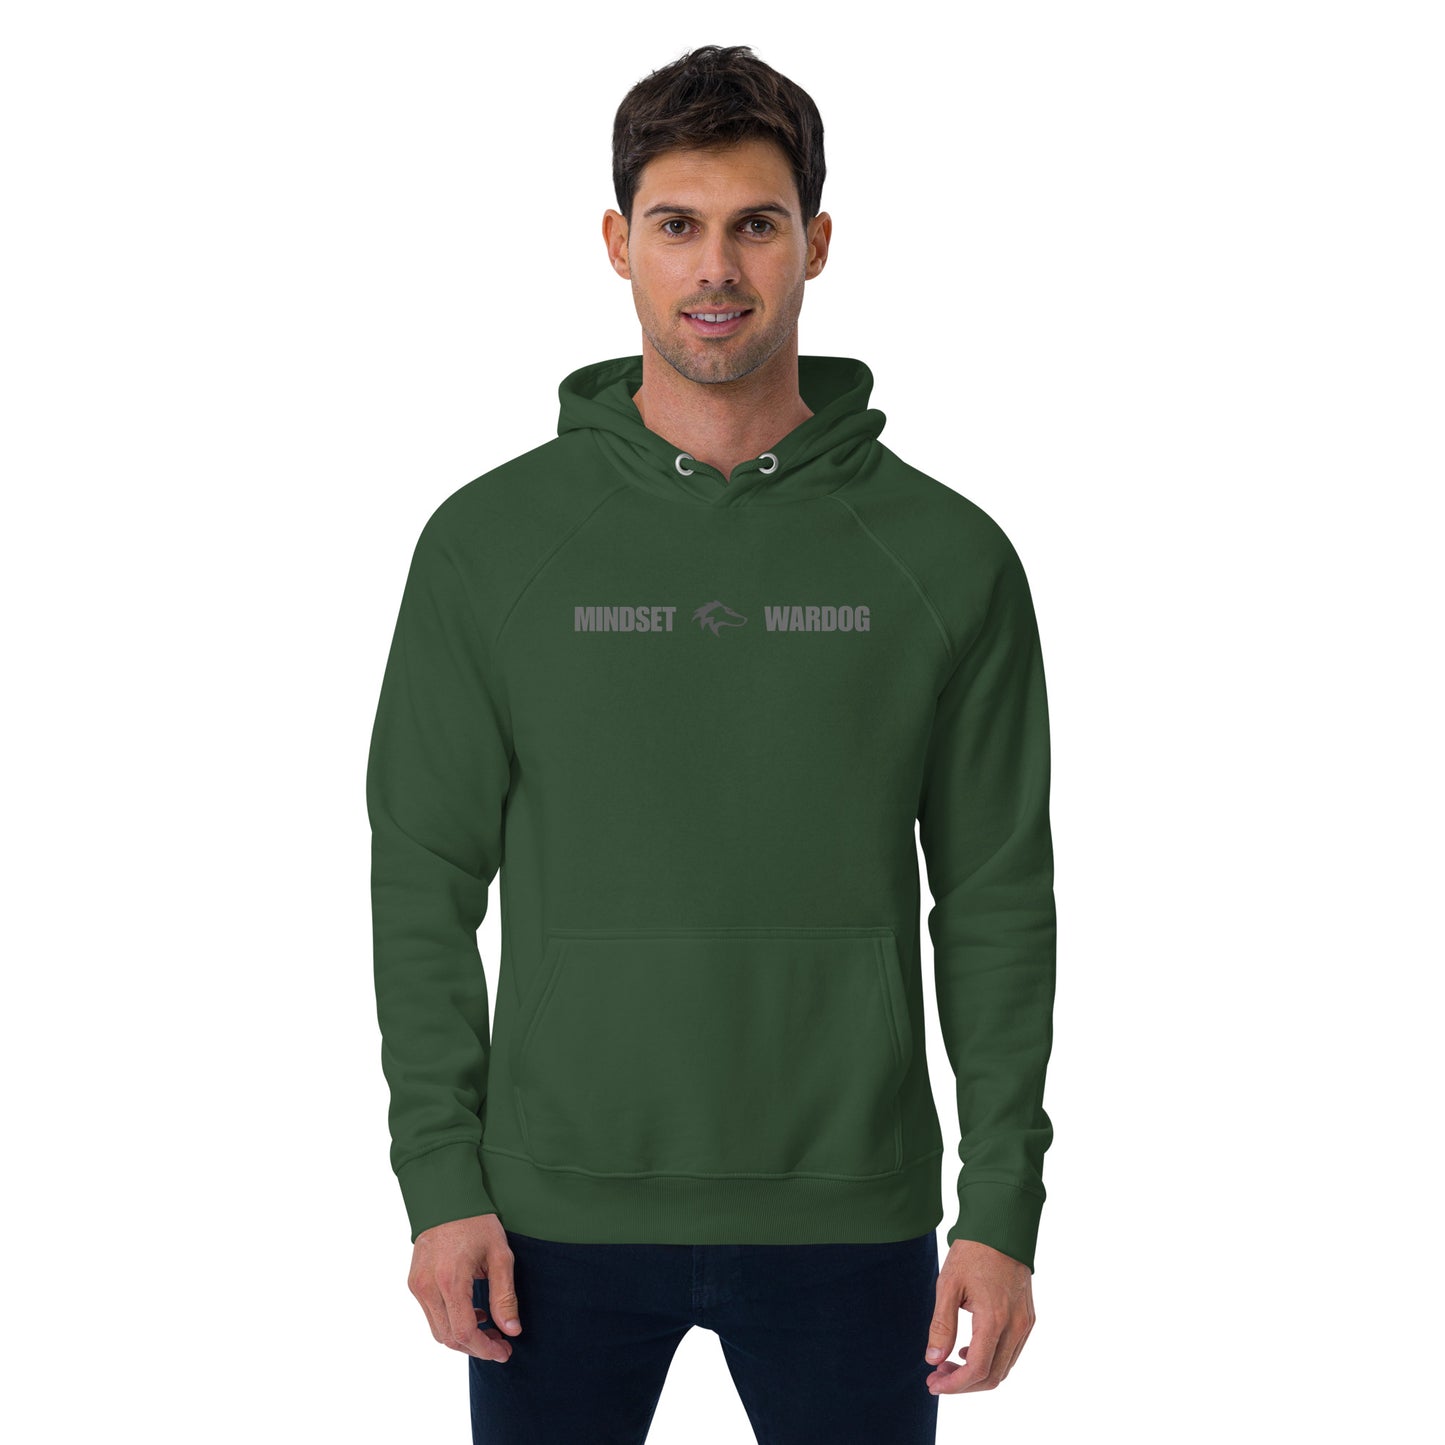 Unisex WARDOG hoodie